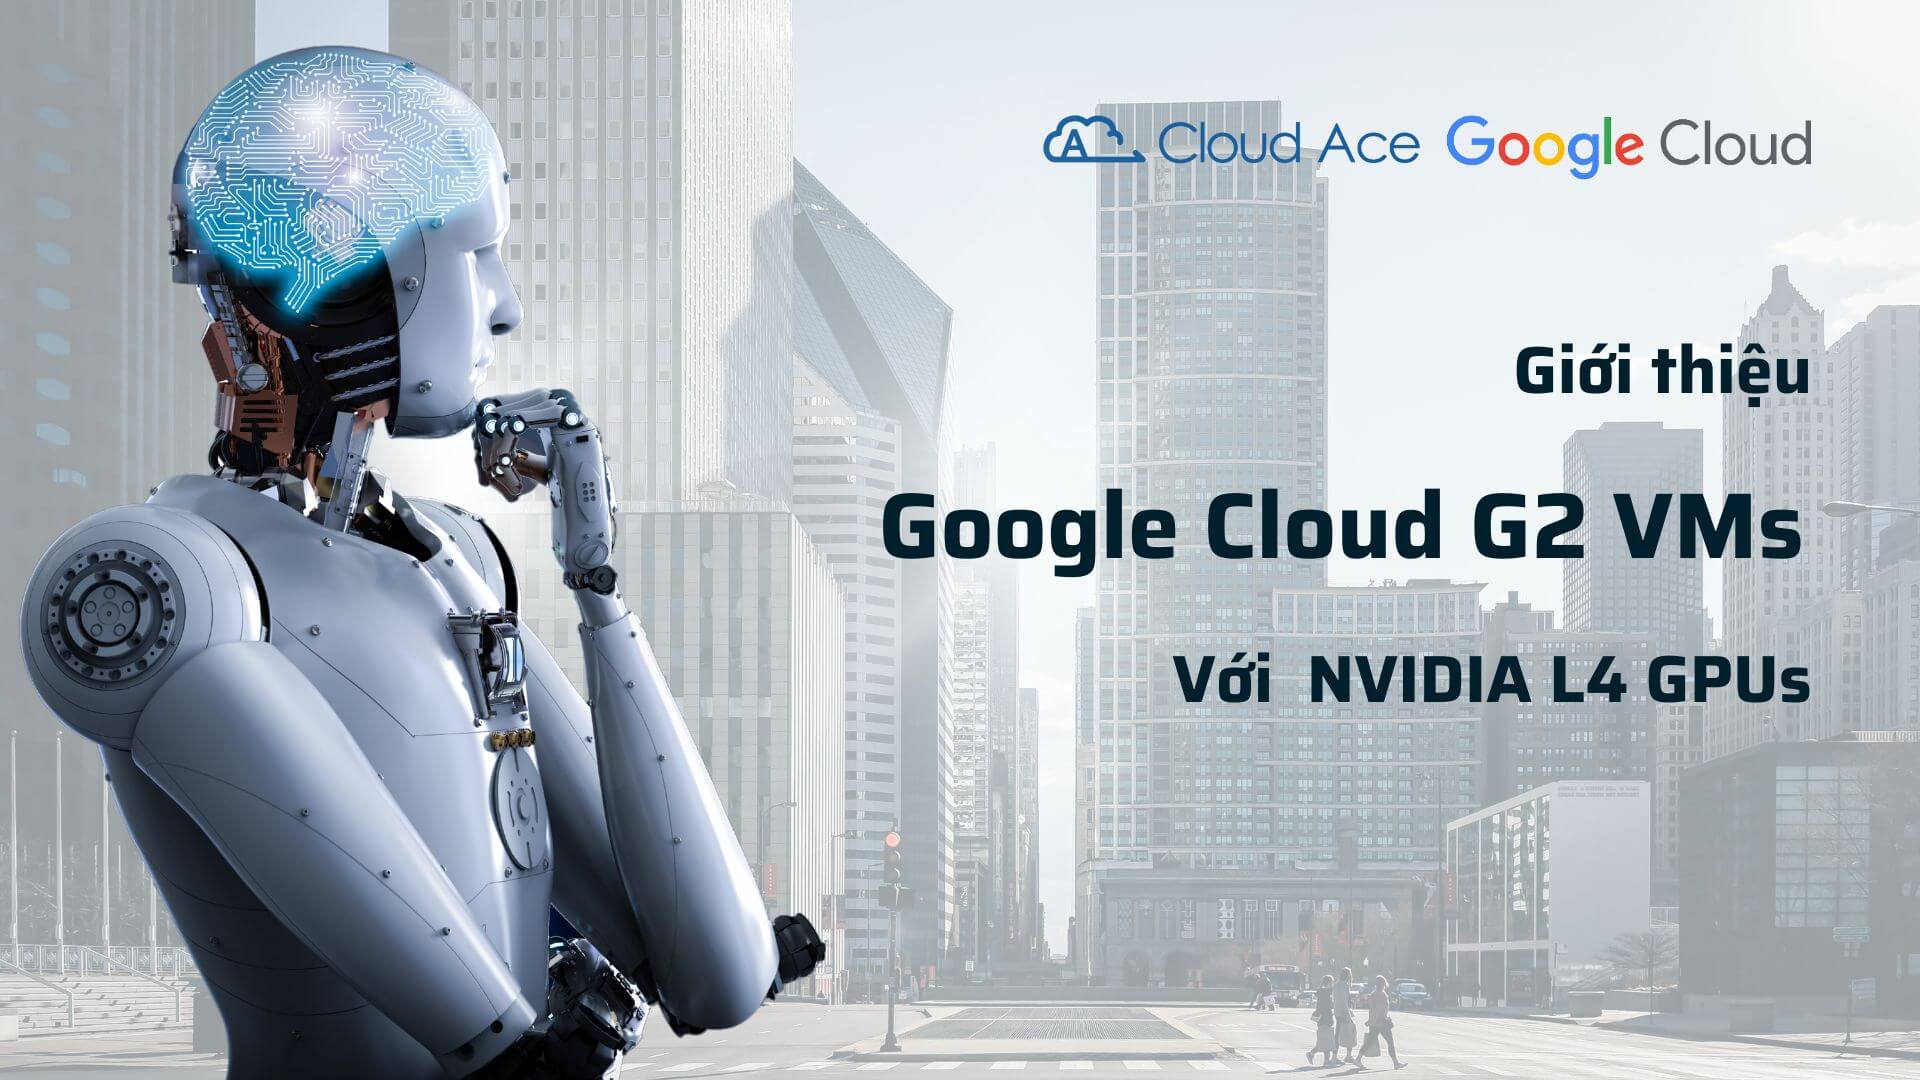 Google Cloud G2 VMs